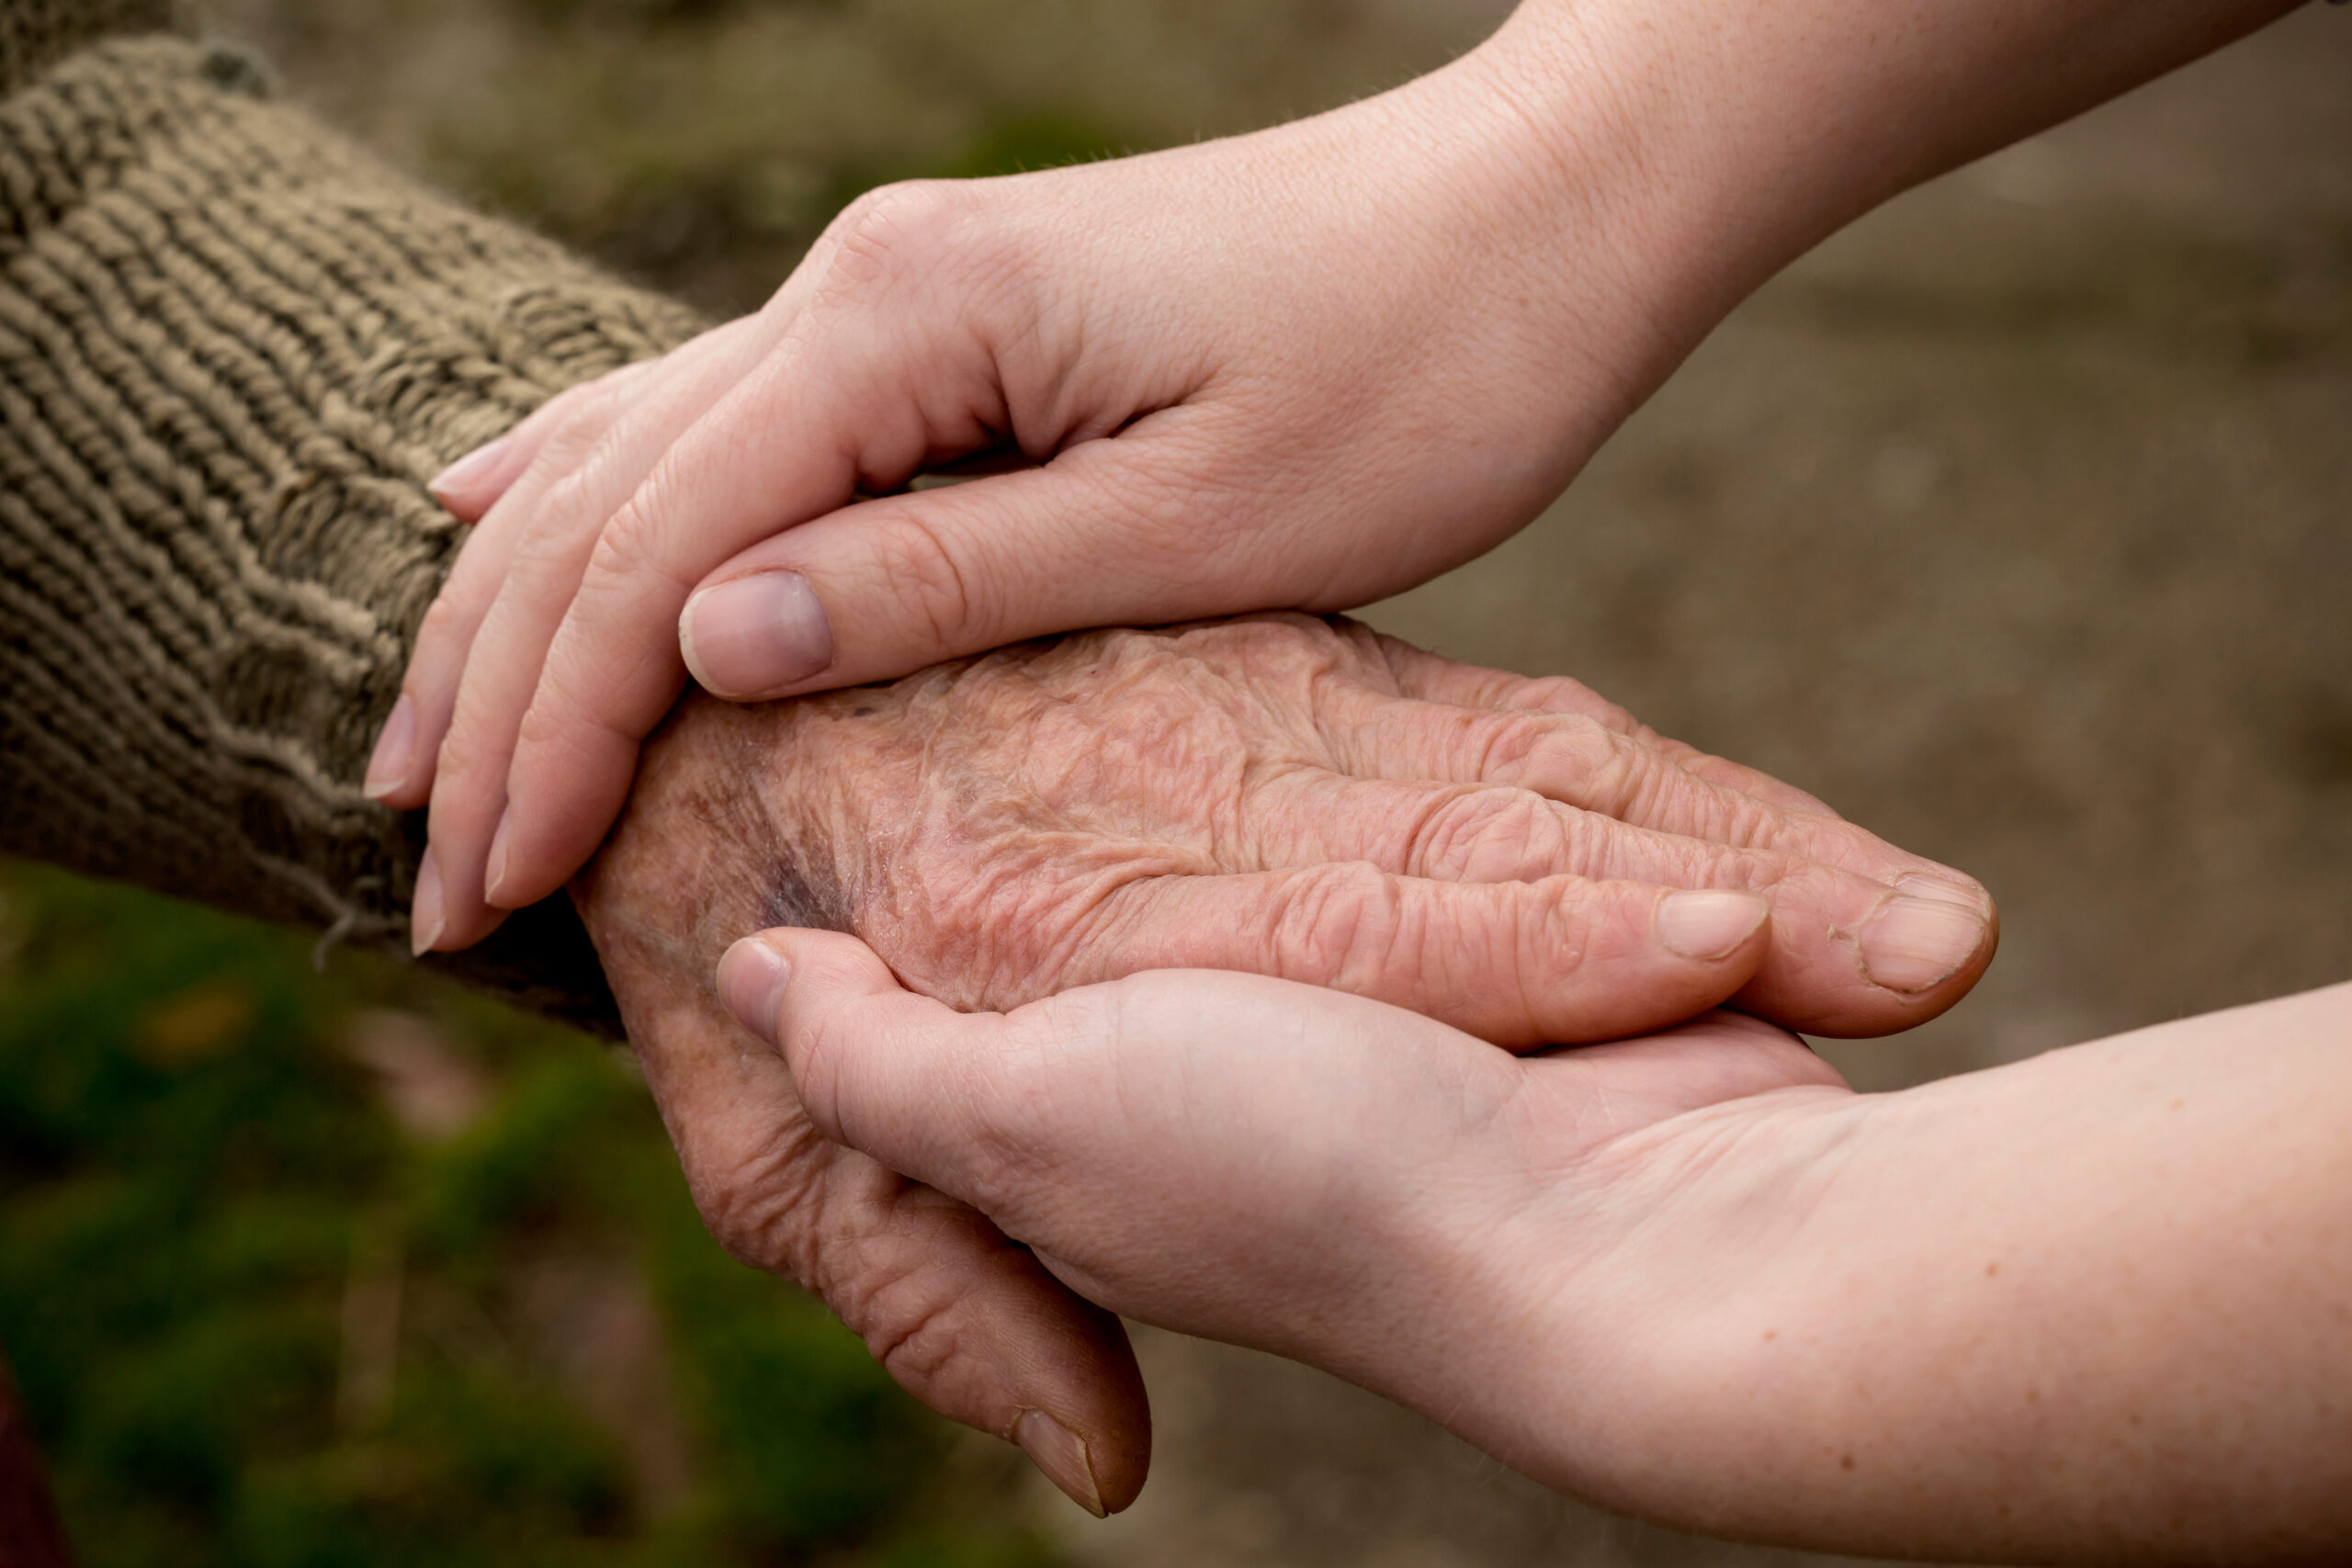 Young hands cradling an elderly hand